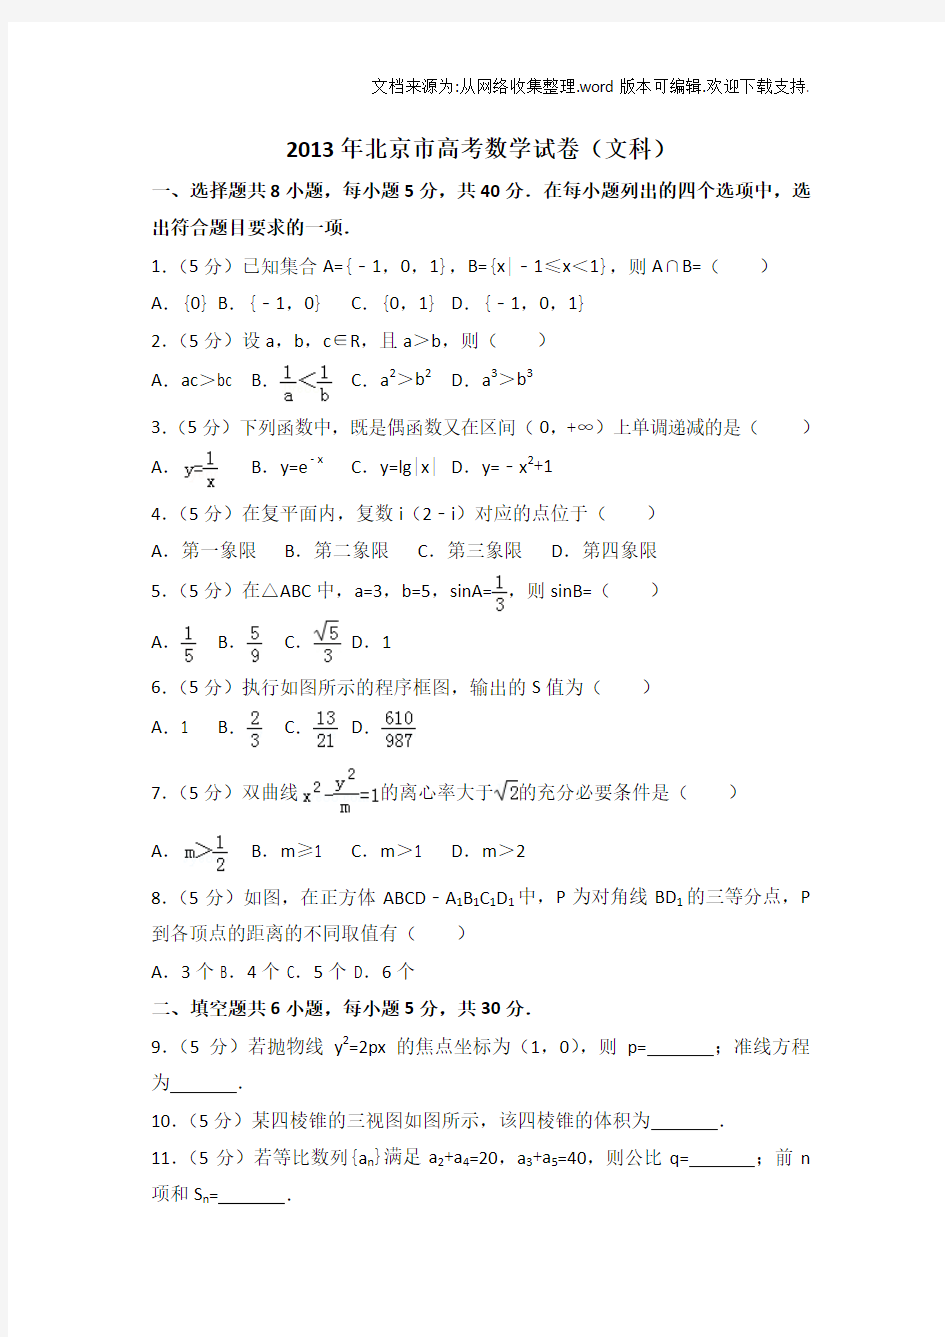 2019年北京市高考数学试卷(文科)